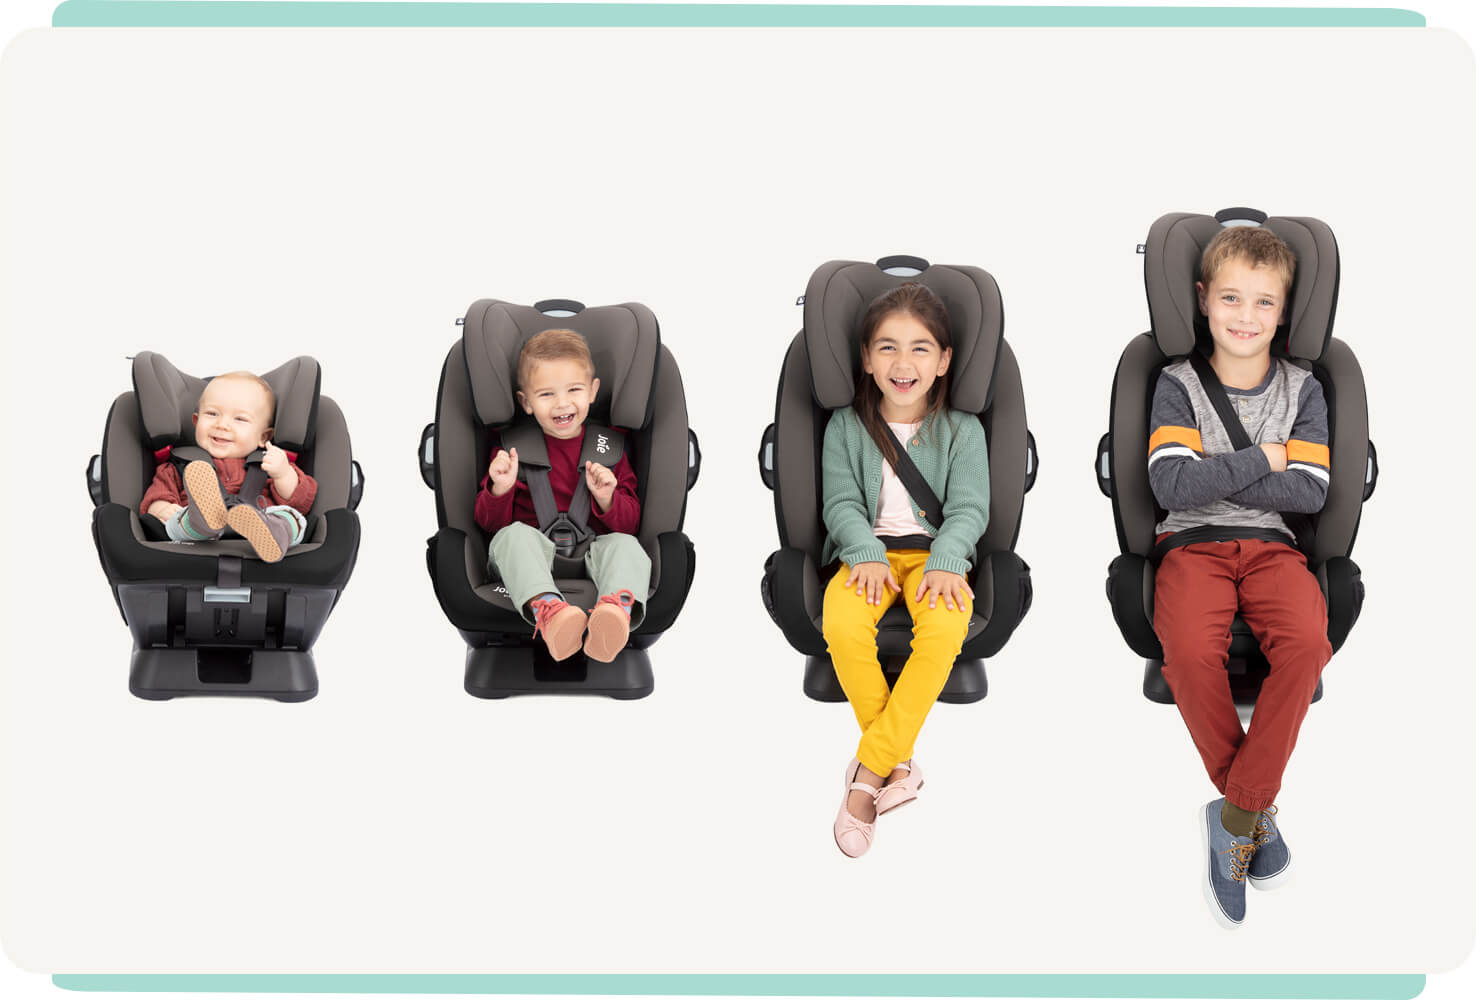  4 Kinder unterschiedlichen Alters sitzen nebeneinander in Joie Every Stage Autokindersitzen: von links nach rechts ein Baby, ein Kleinkind, ein kleines Kind und ein älteres Kind.